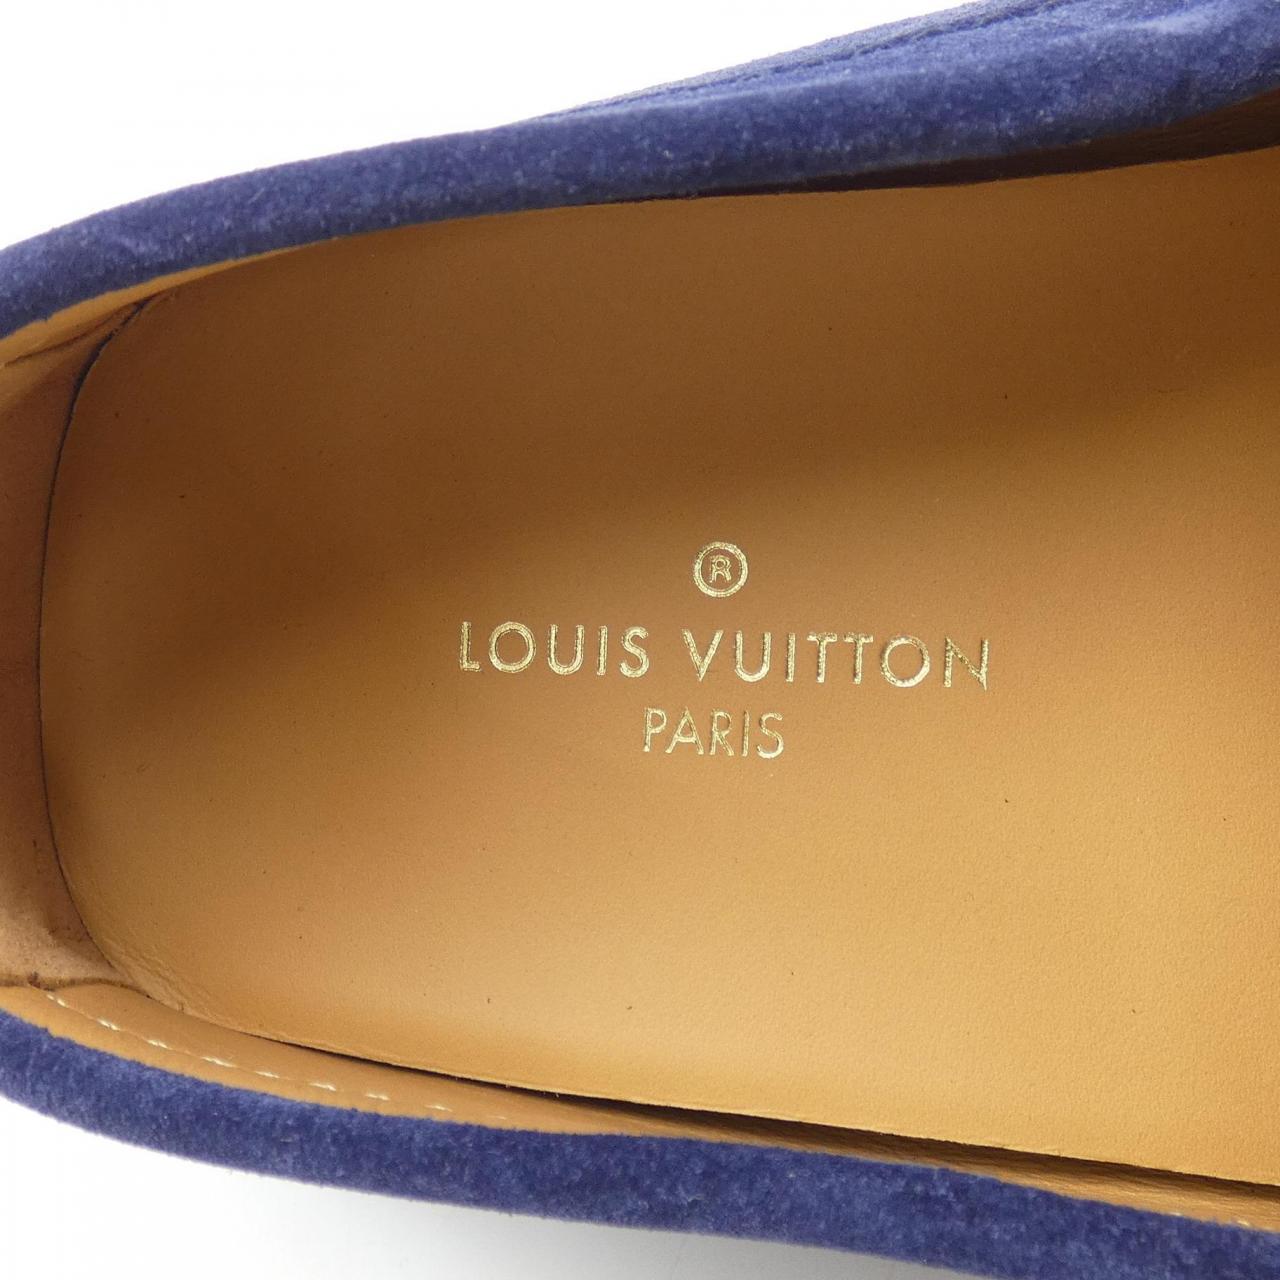 LOUIS LOUIS VUITTON shoes